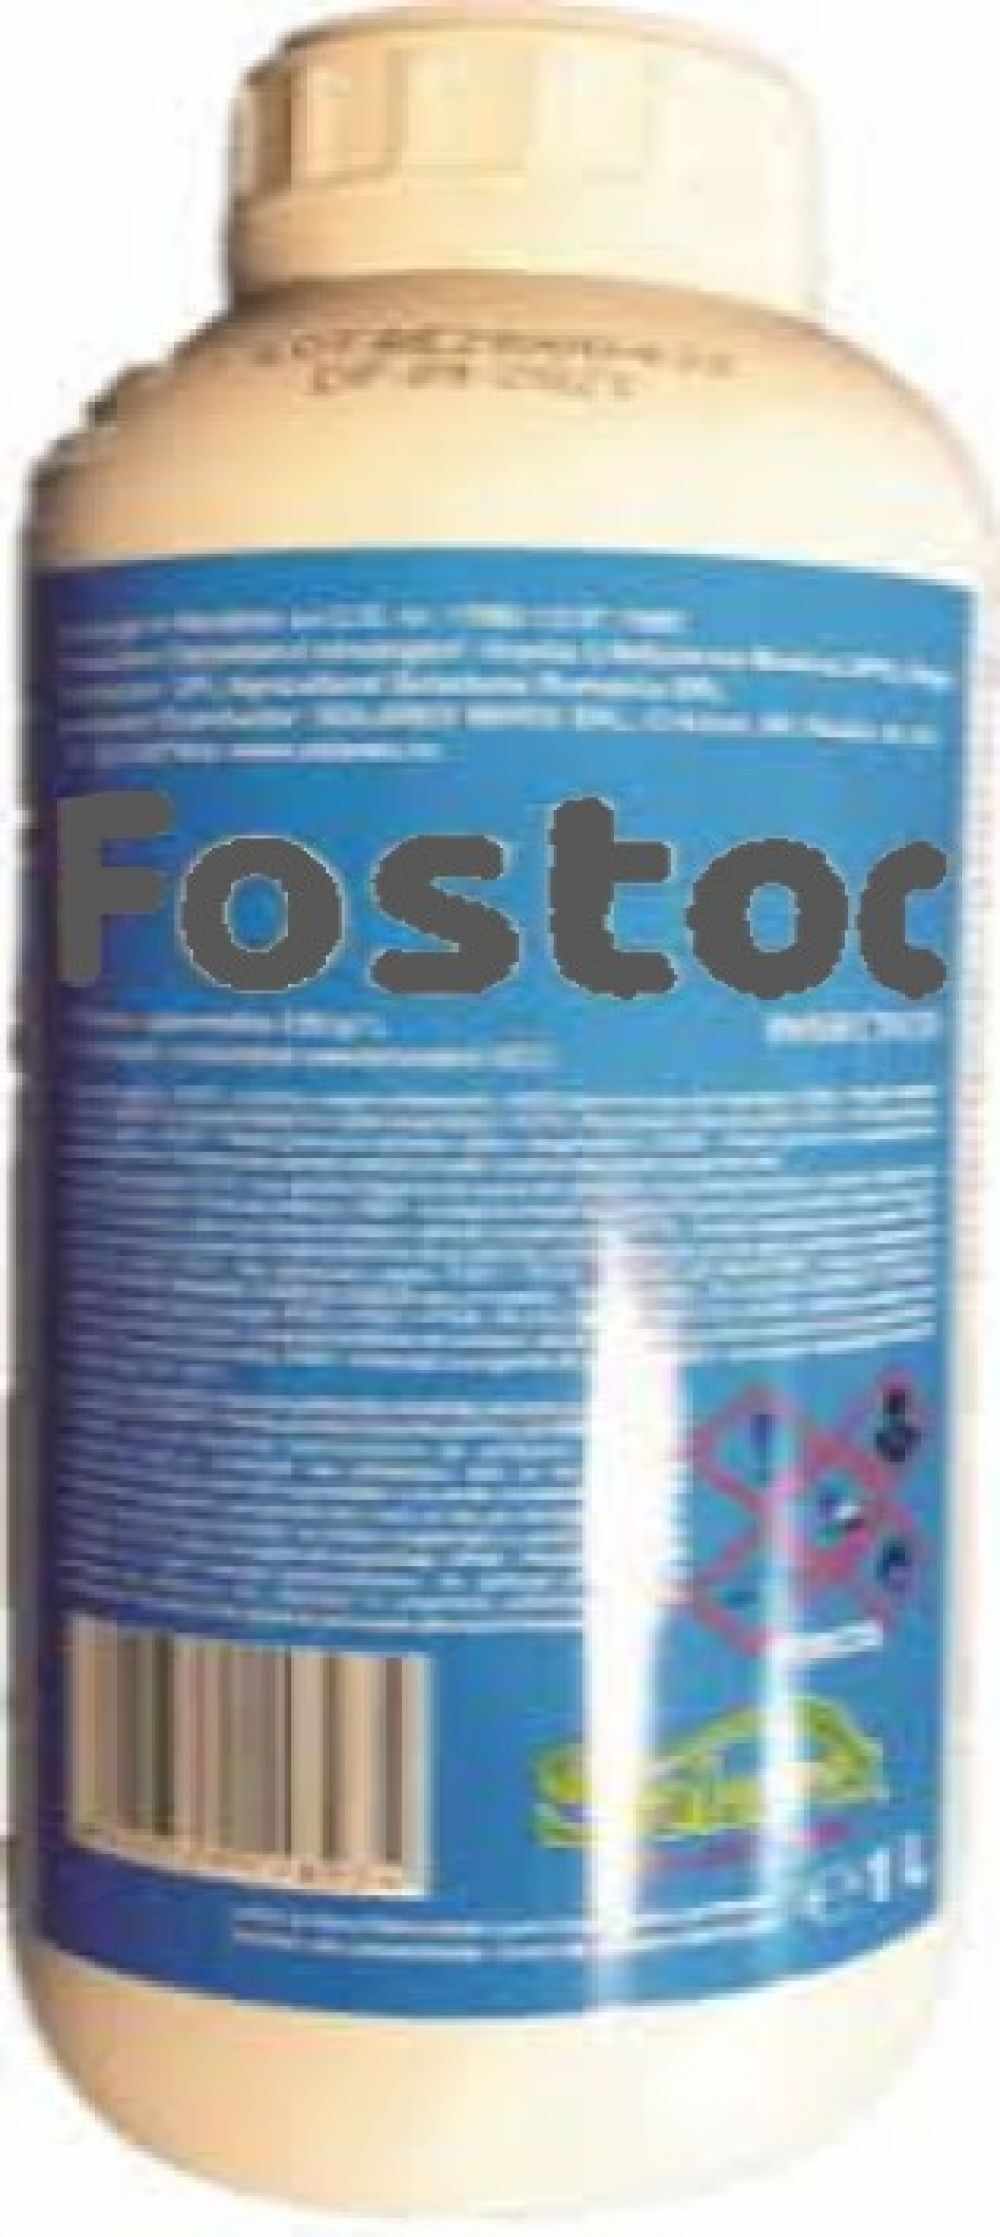 Insecticid Fostoc 1 l